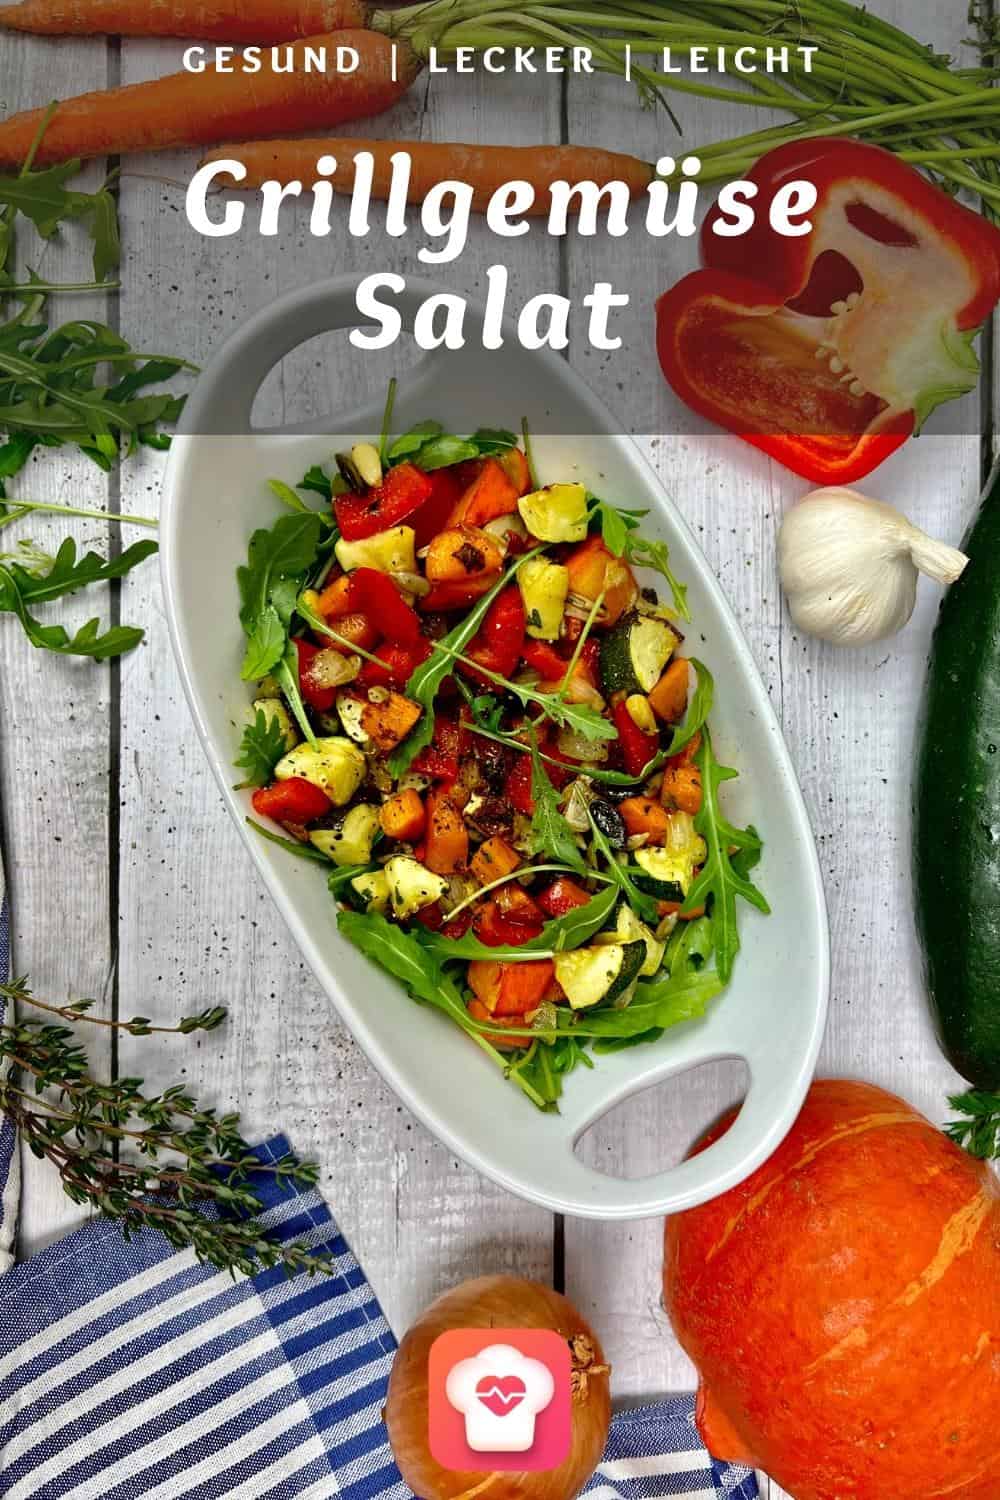 Grillgemüse-Salat - Gesunder Salat mit knackigem Gemüse